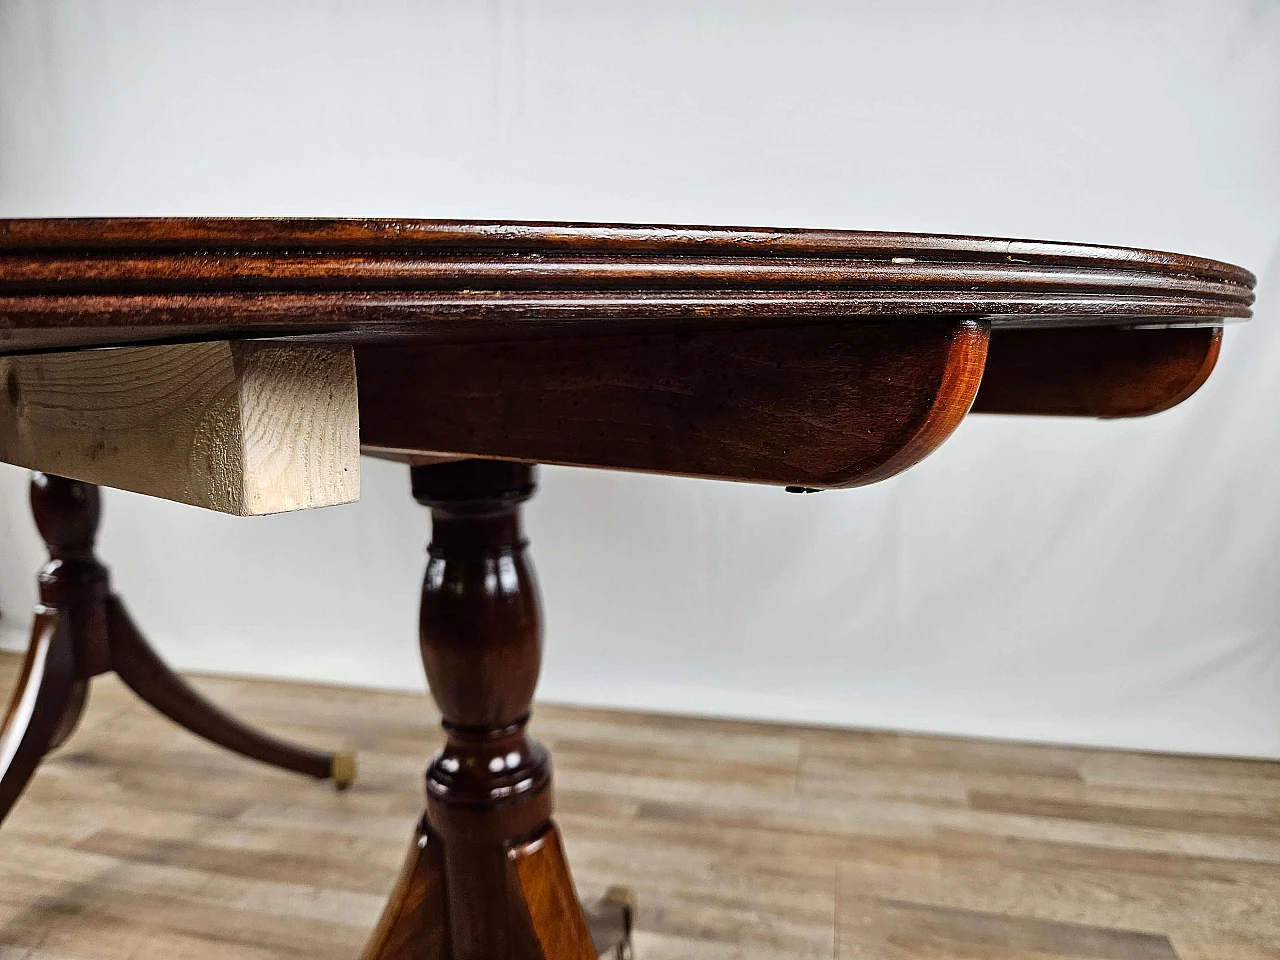 English mahogany extending table, early 20th century 49